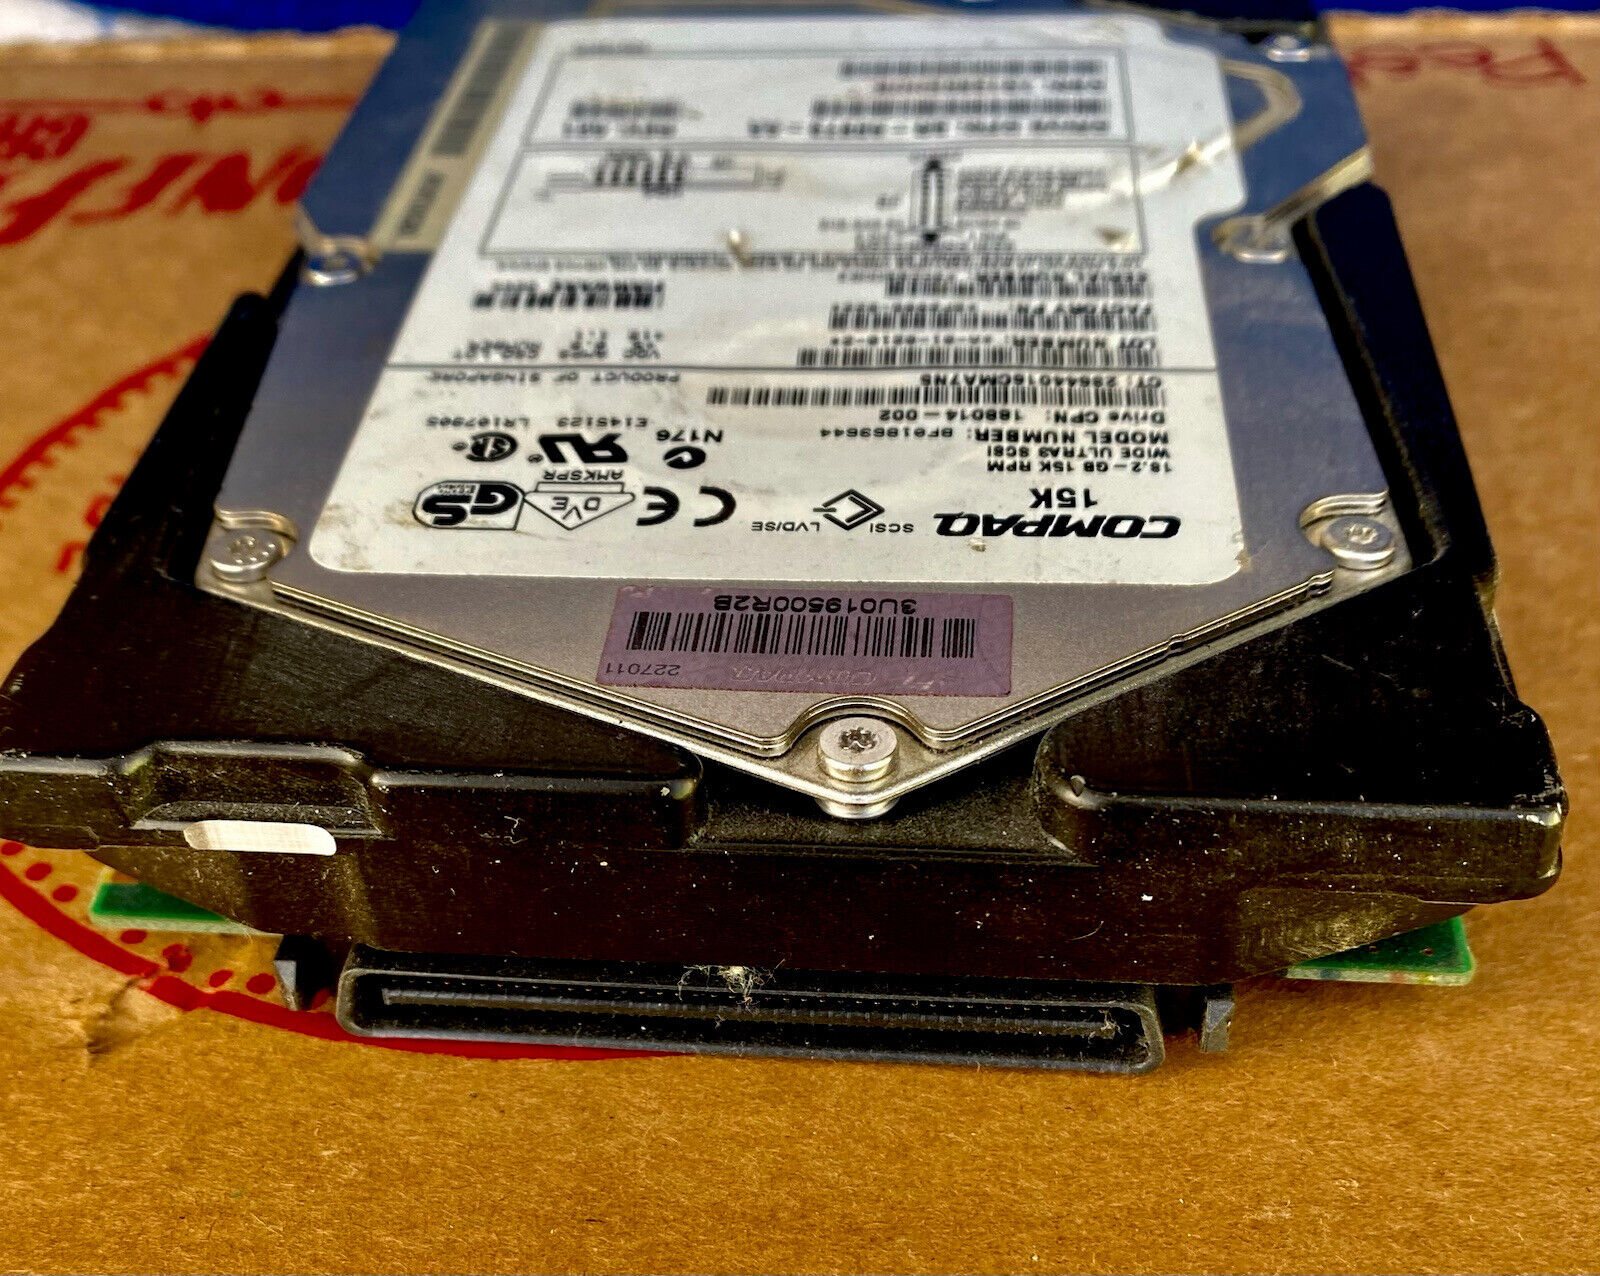 COMPAQ 9P2006-022 188014-002 BF01863644 18GB 15K RPM WIDE ULTRA3 SCSI HDD